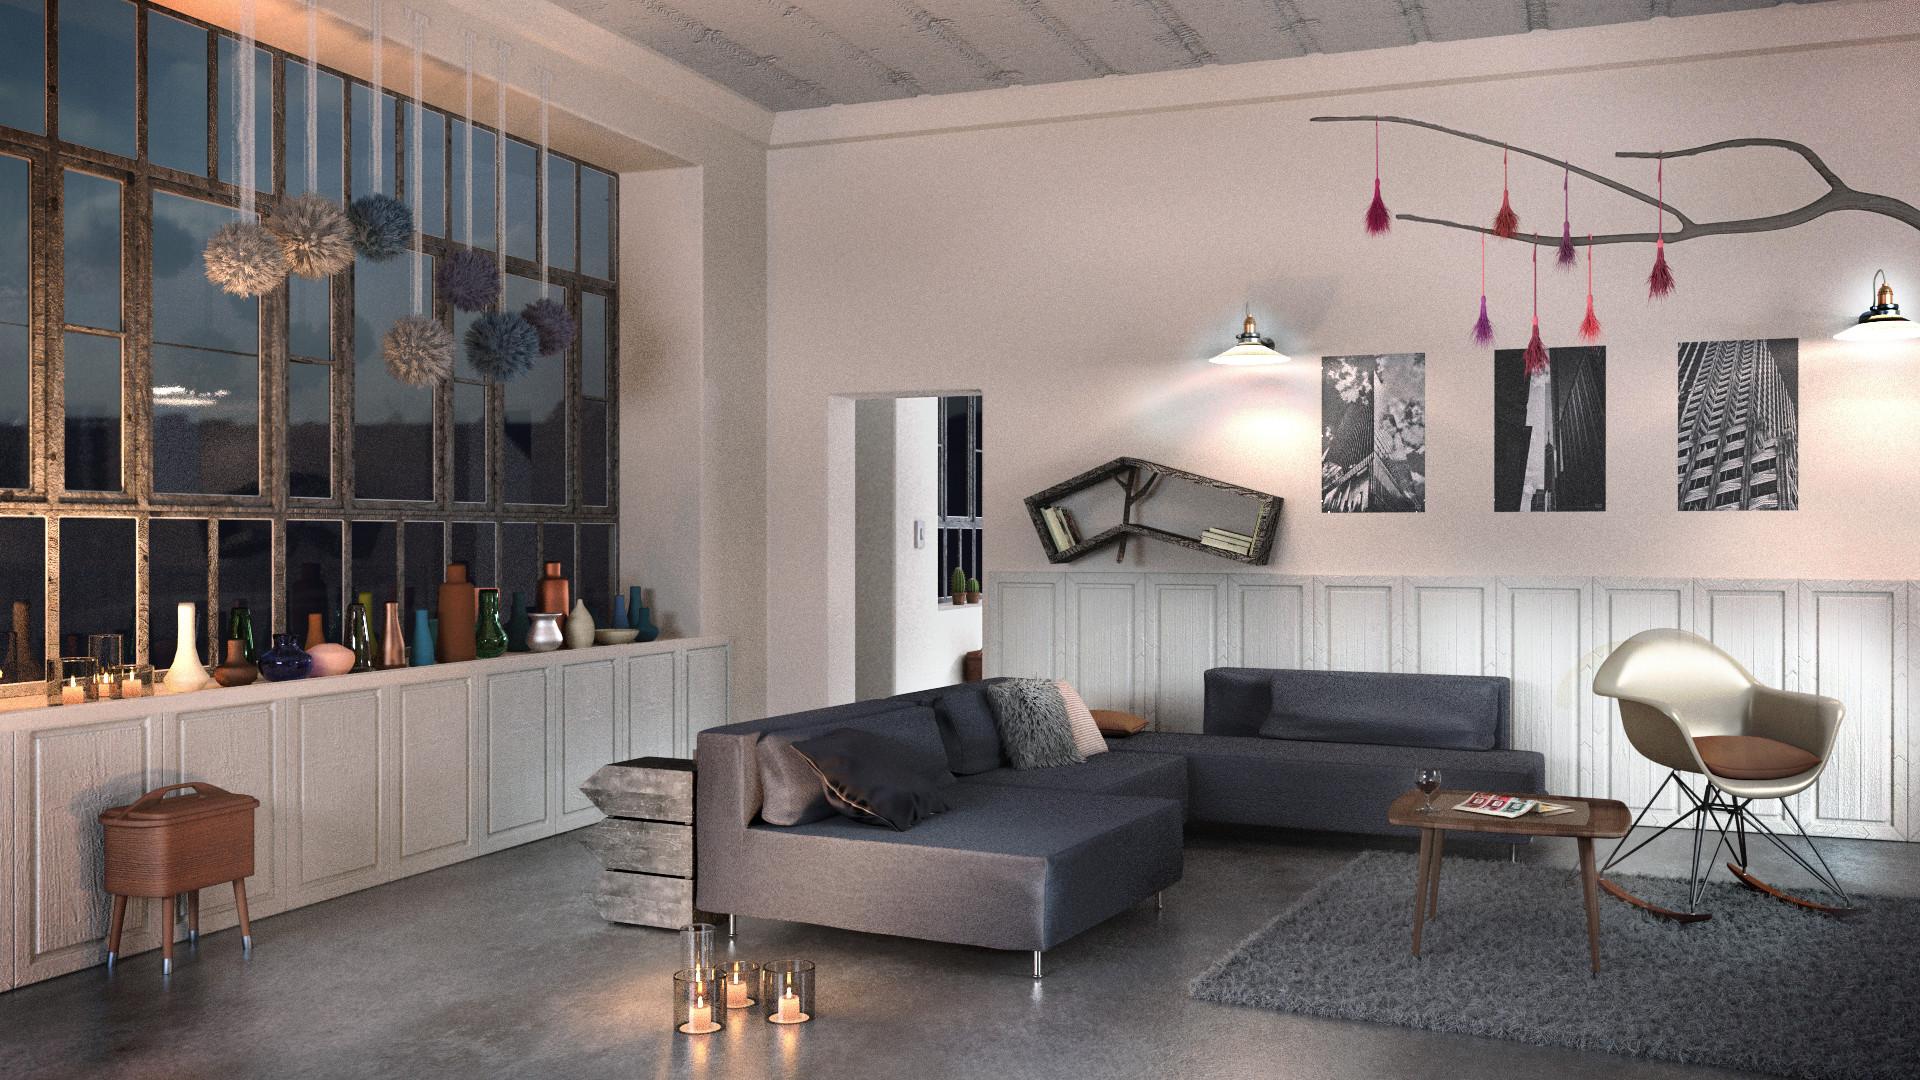 Loftstyle #wohnzimmer #loft ©www.rasa-en-detail.de